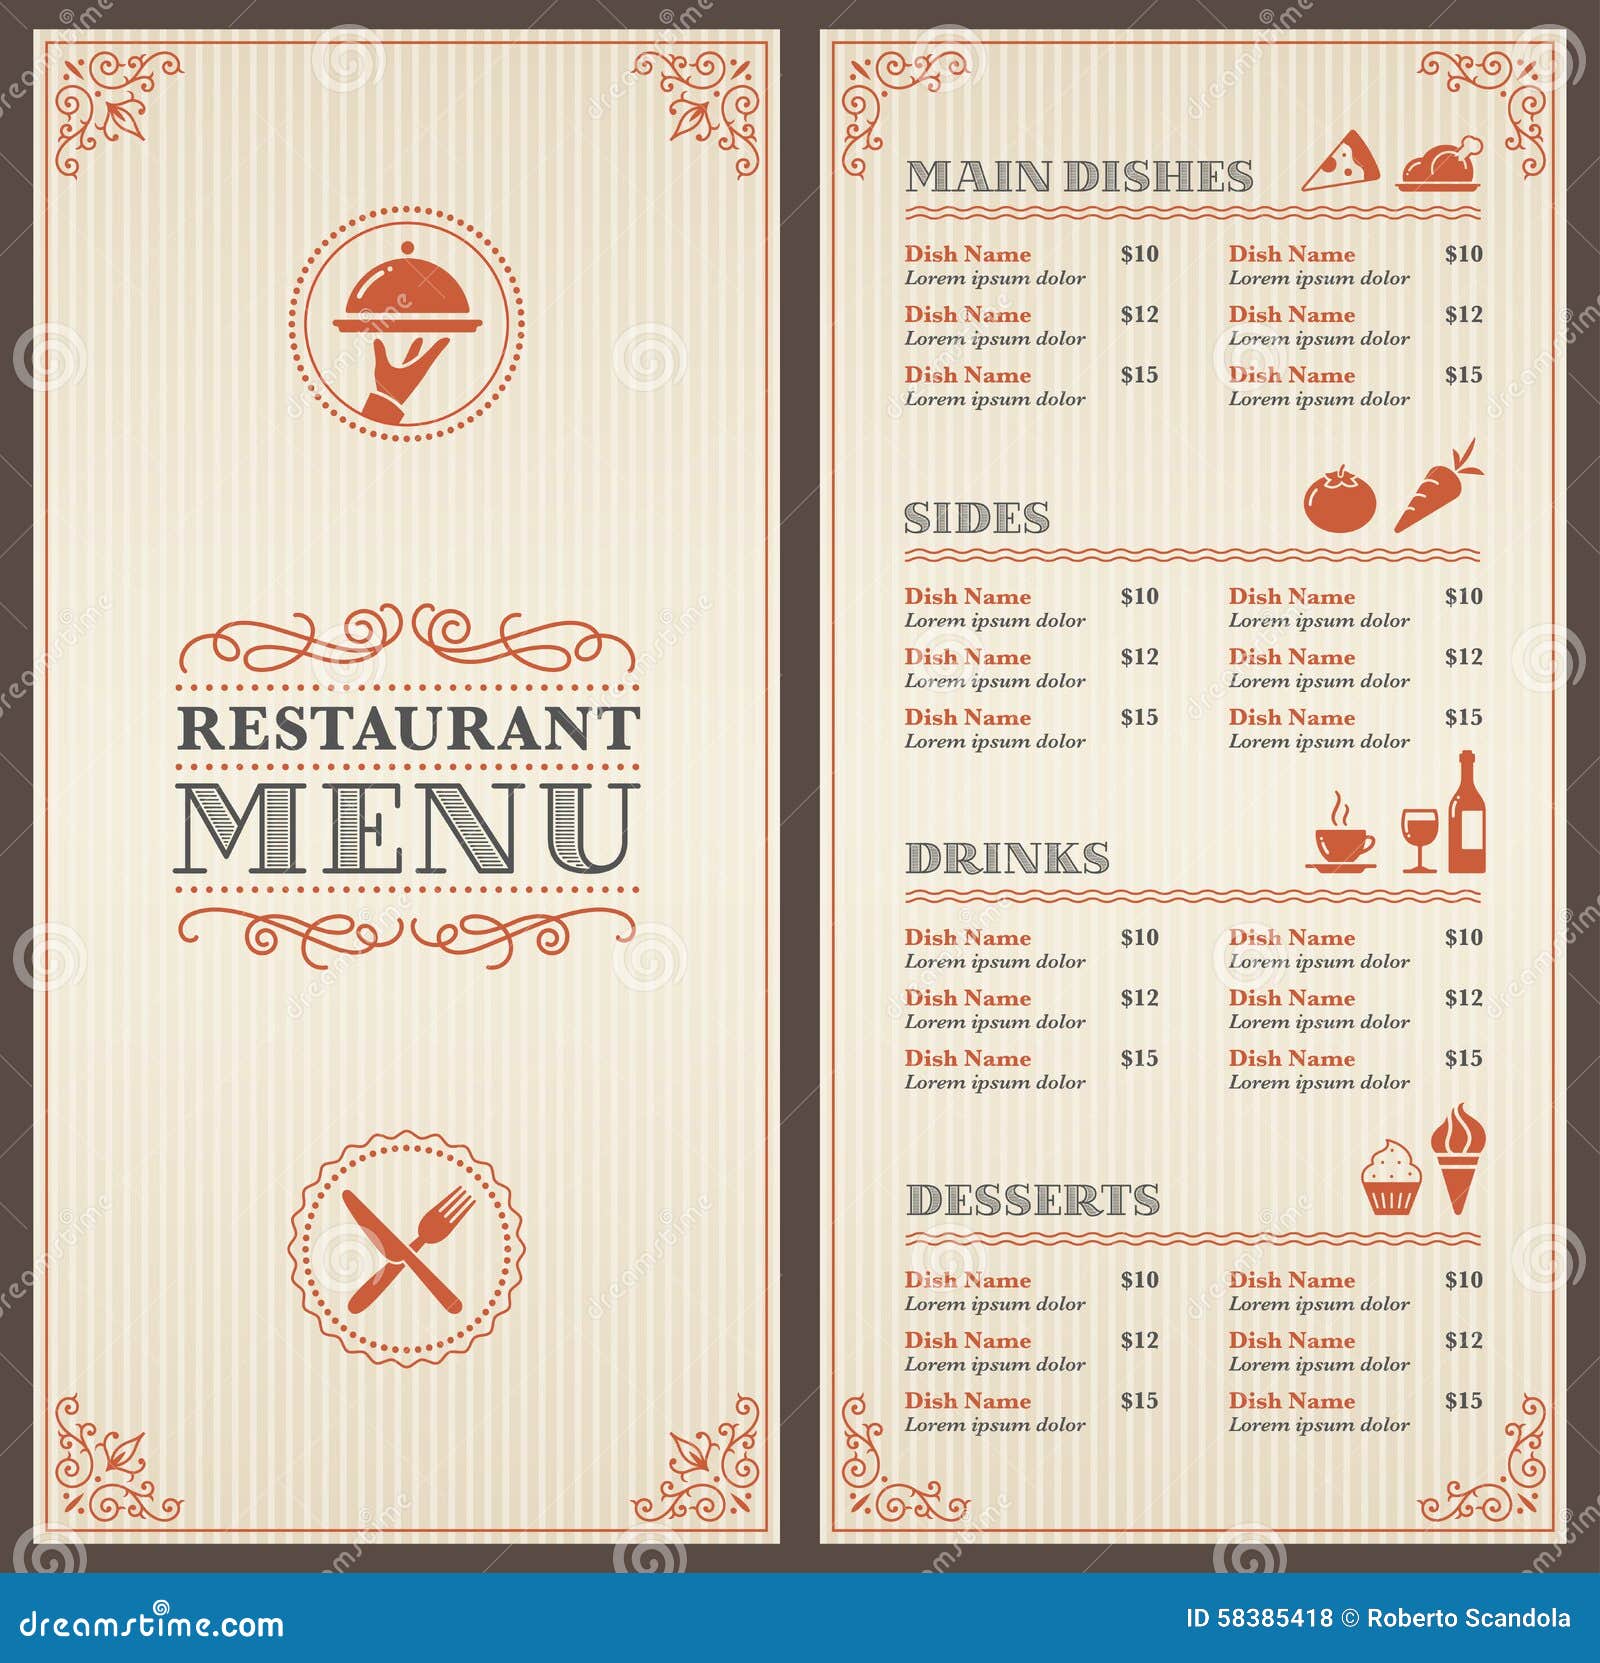 classic restaurant menu template